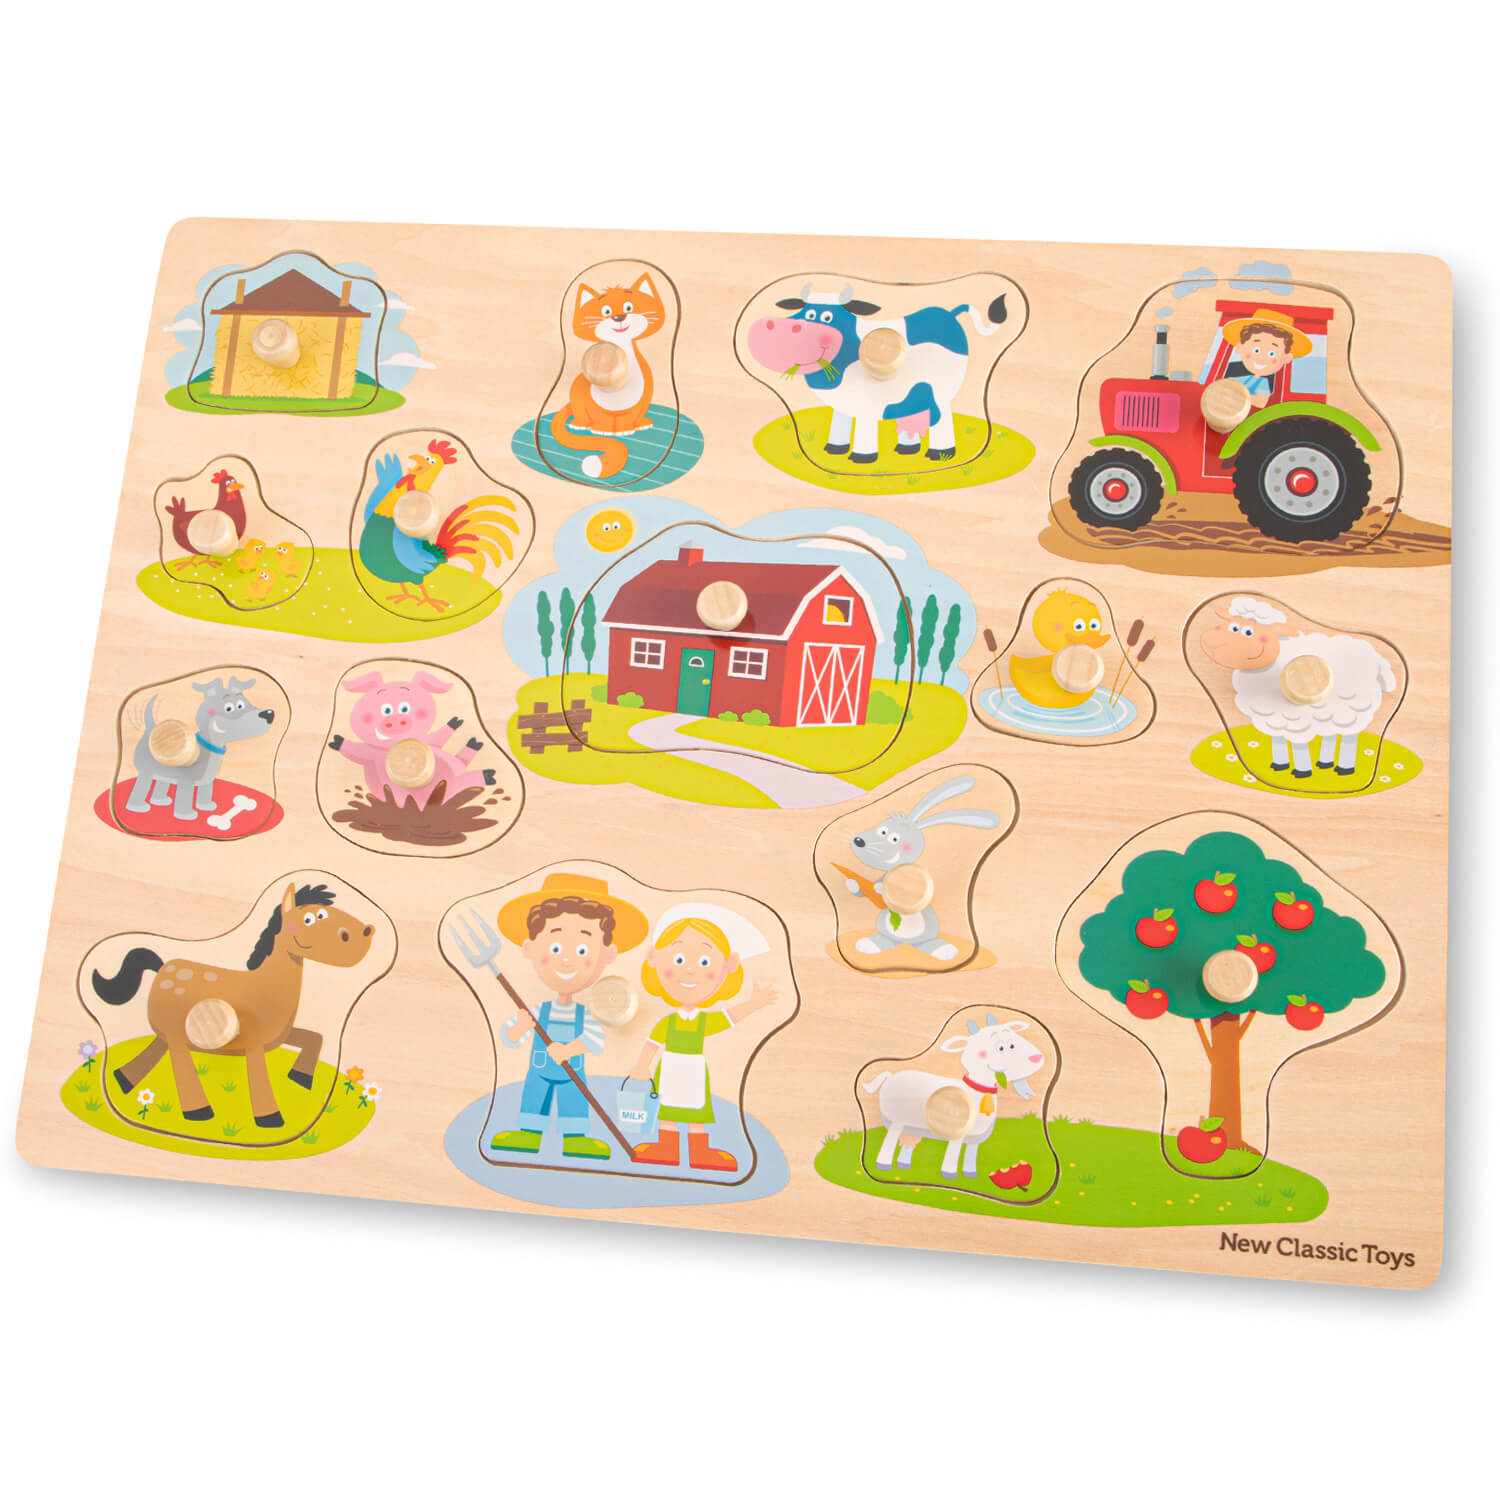 New Classic Toys - Peg Puzzle Farmhouse (16 pcs) (N10440)